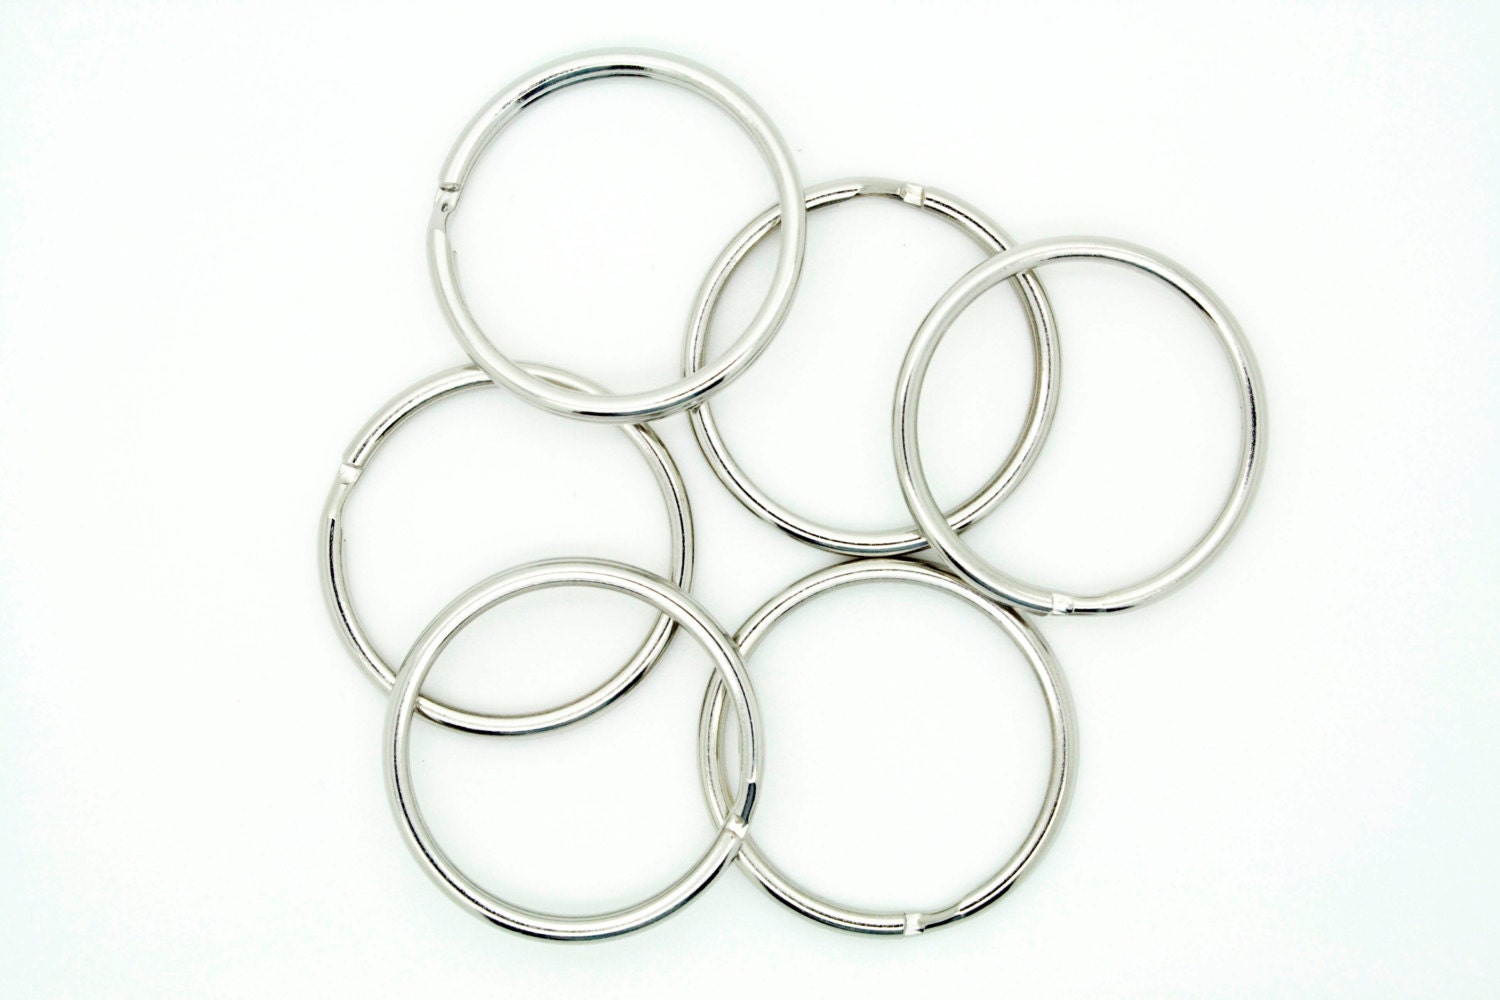 100pcs Key Rings Split Rings Keychain 32mm 1-1/4 D Heavy Duty Rings 